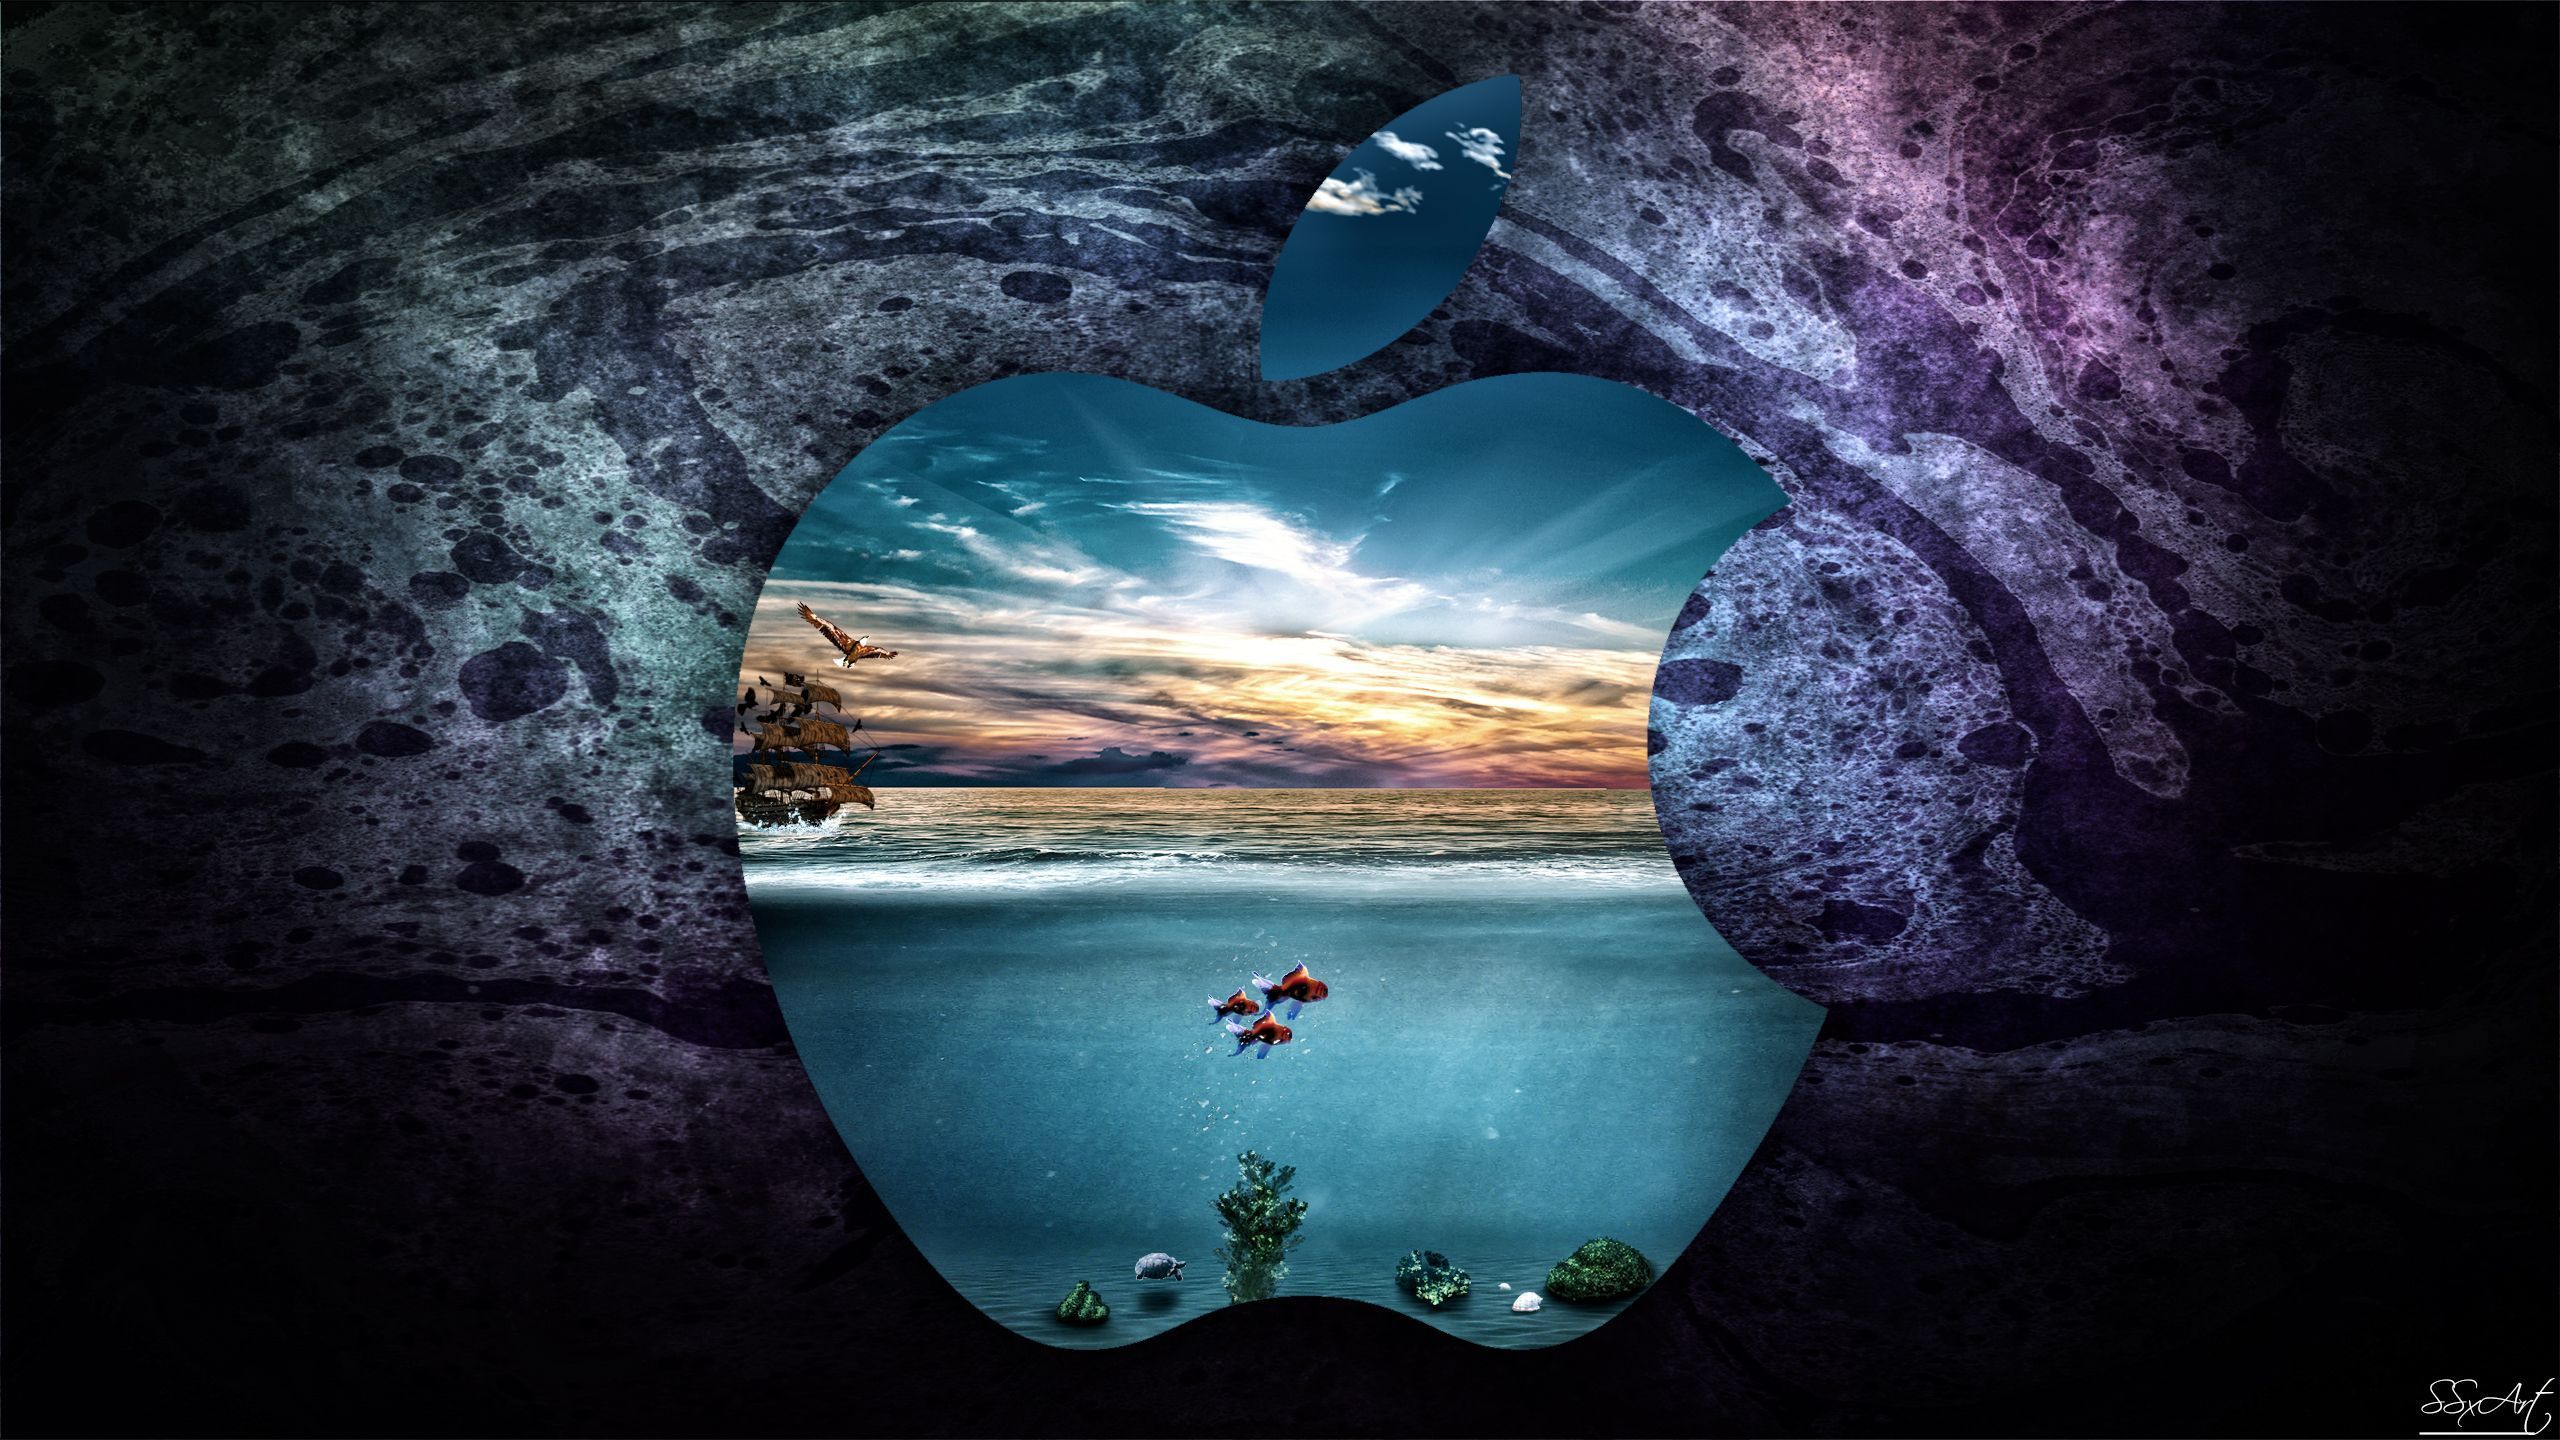 Apple UnderWater iMac 27 inch by SSxArt on DeviantArt